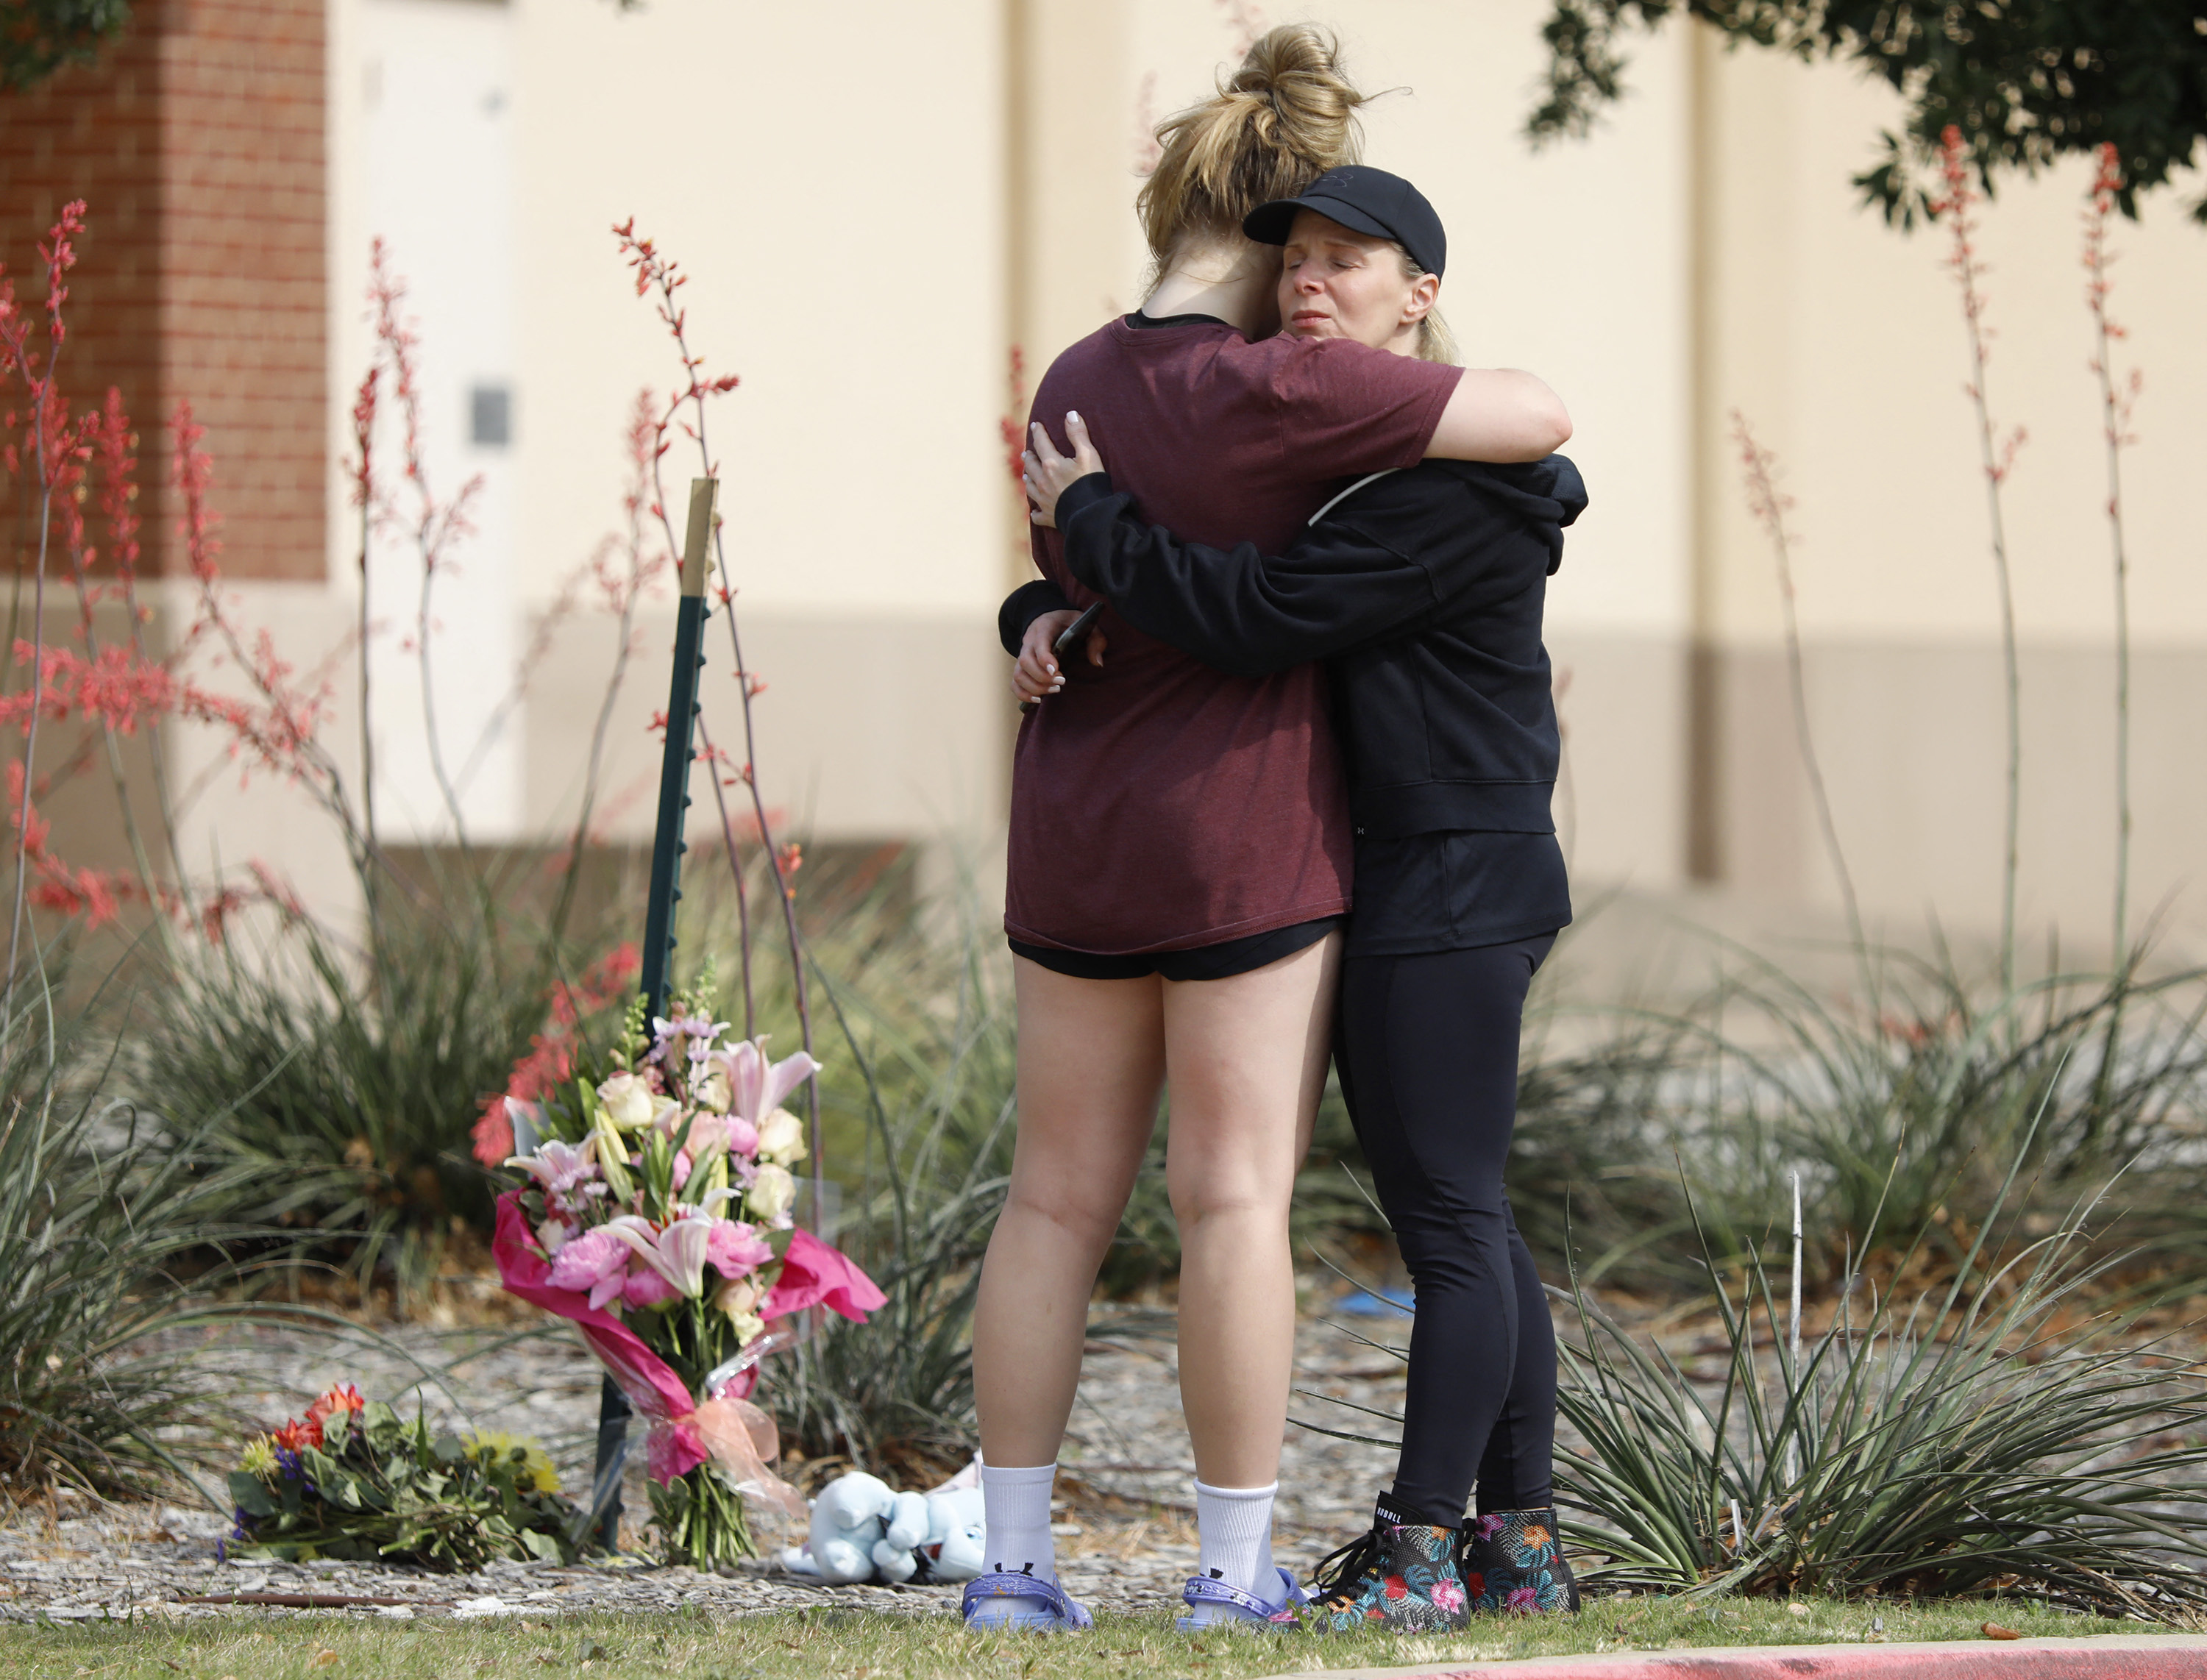 Este fin de semana, varias familias quedaron enlutadas tras el fatal tiroteo registrado en Allen, Texas, Estados Unidos. (Foto Prensa Libre: AFP)